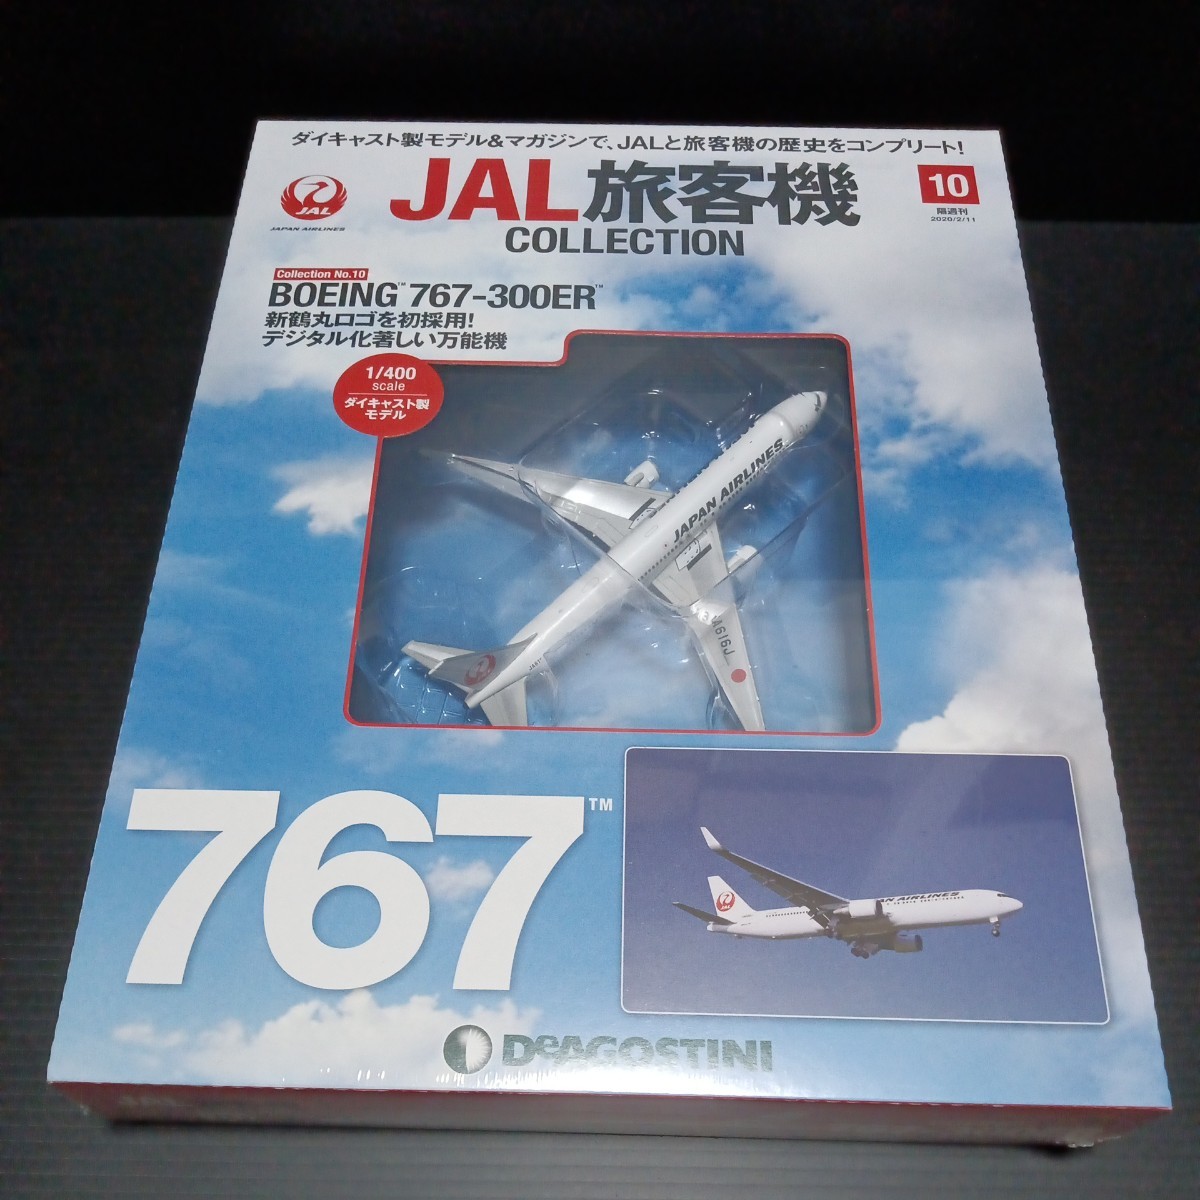 デアゴスティーニ「1/400 JAL 旅客機コレクション」No 47 ダグラス DC